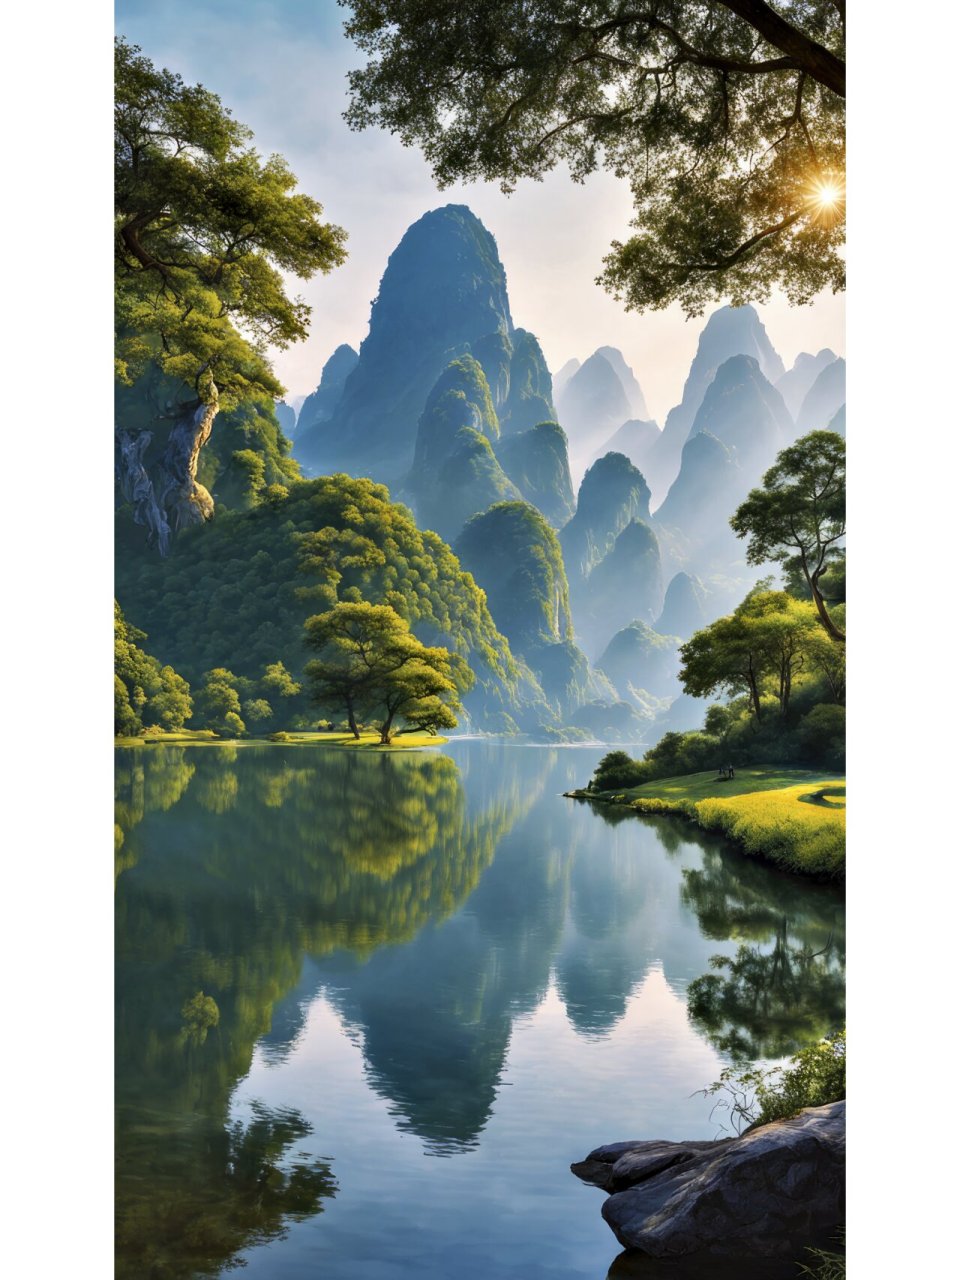 治愈系手机风景壁纸—桂林山水 拿图请留痕,需要原图请私信,免费送